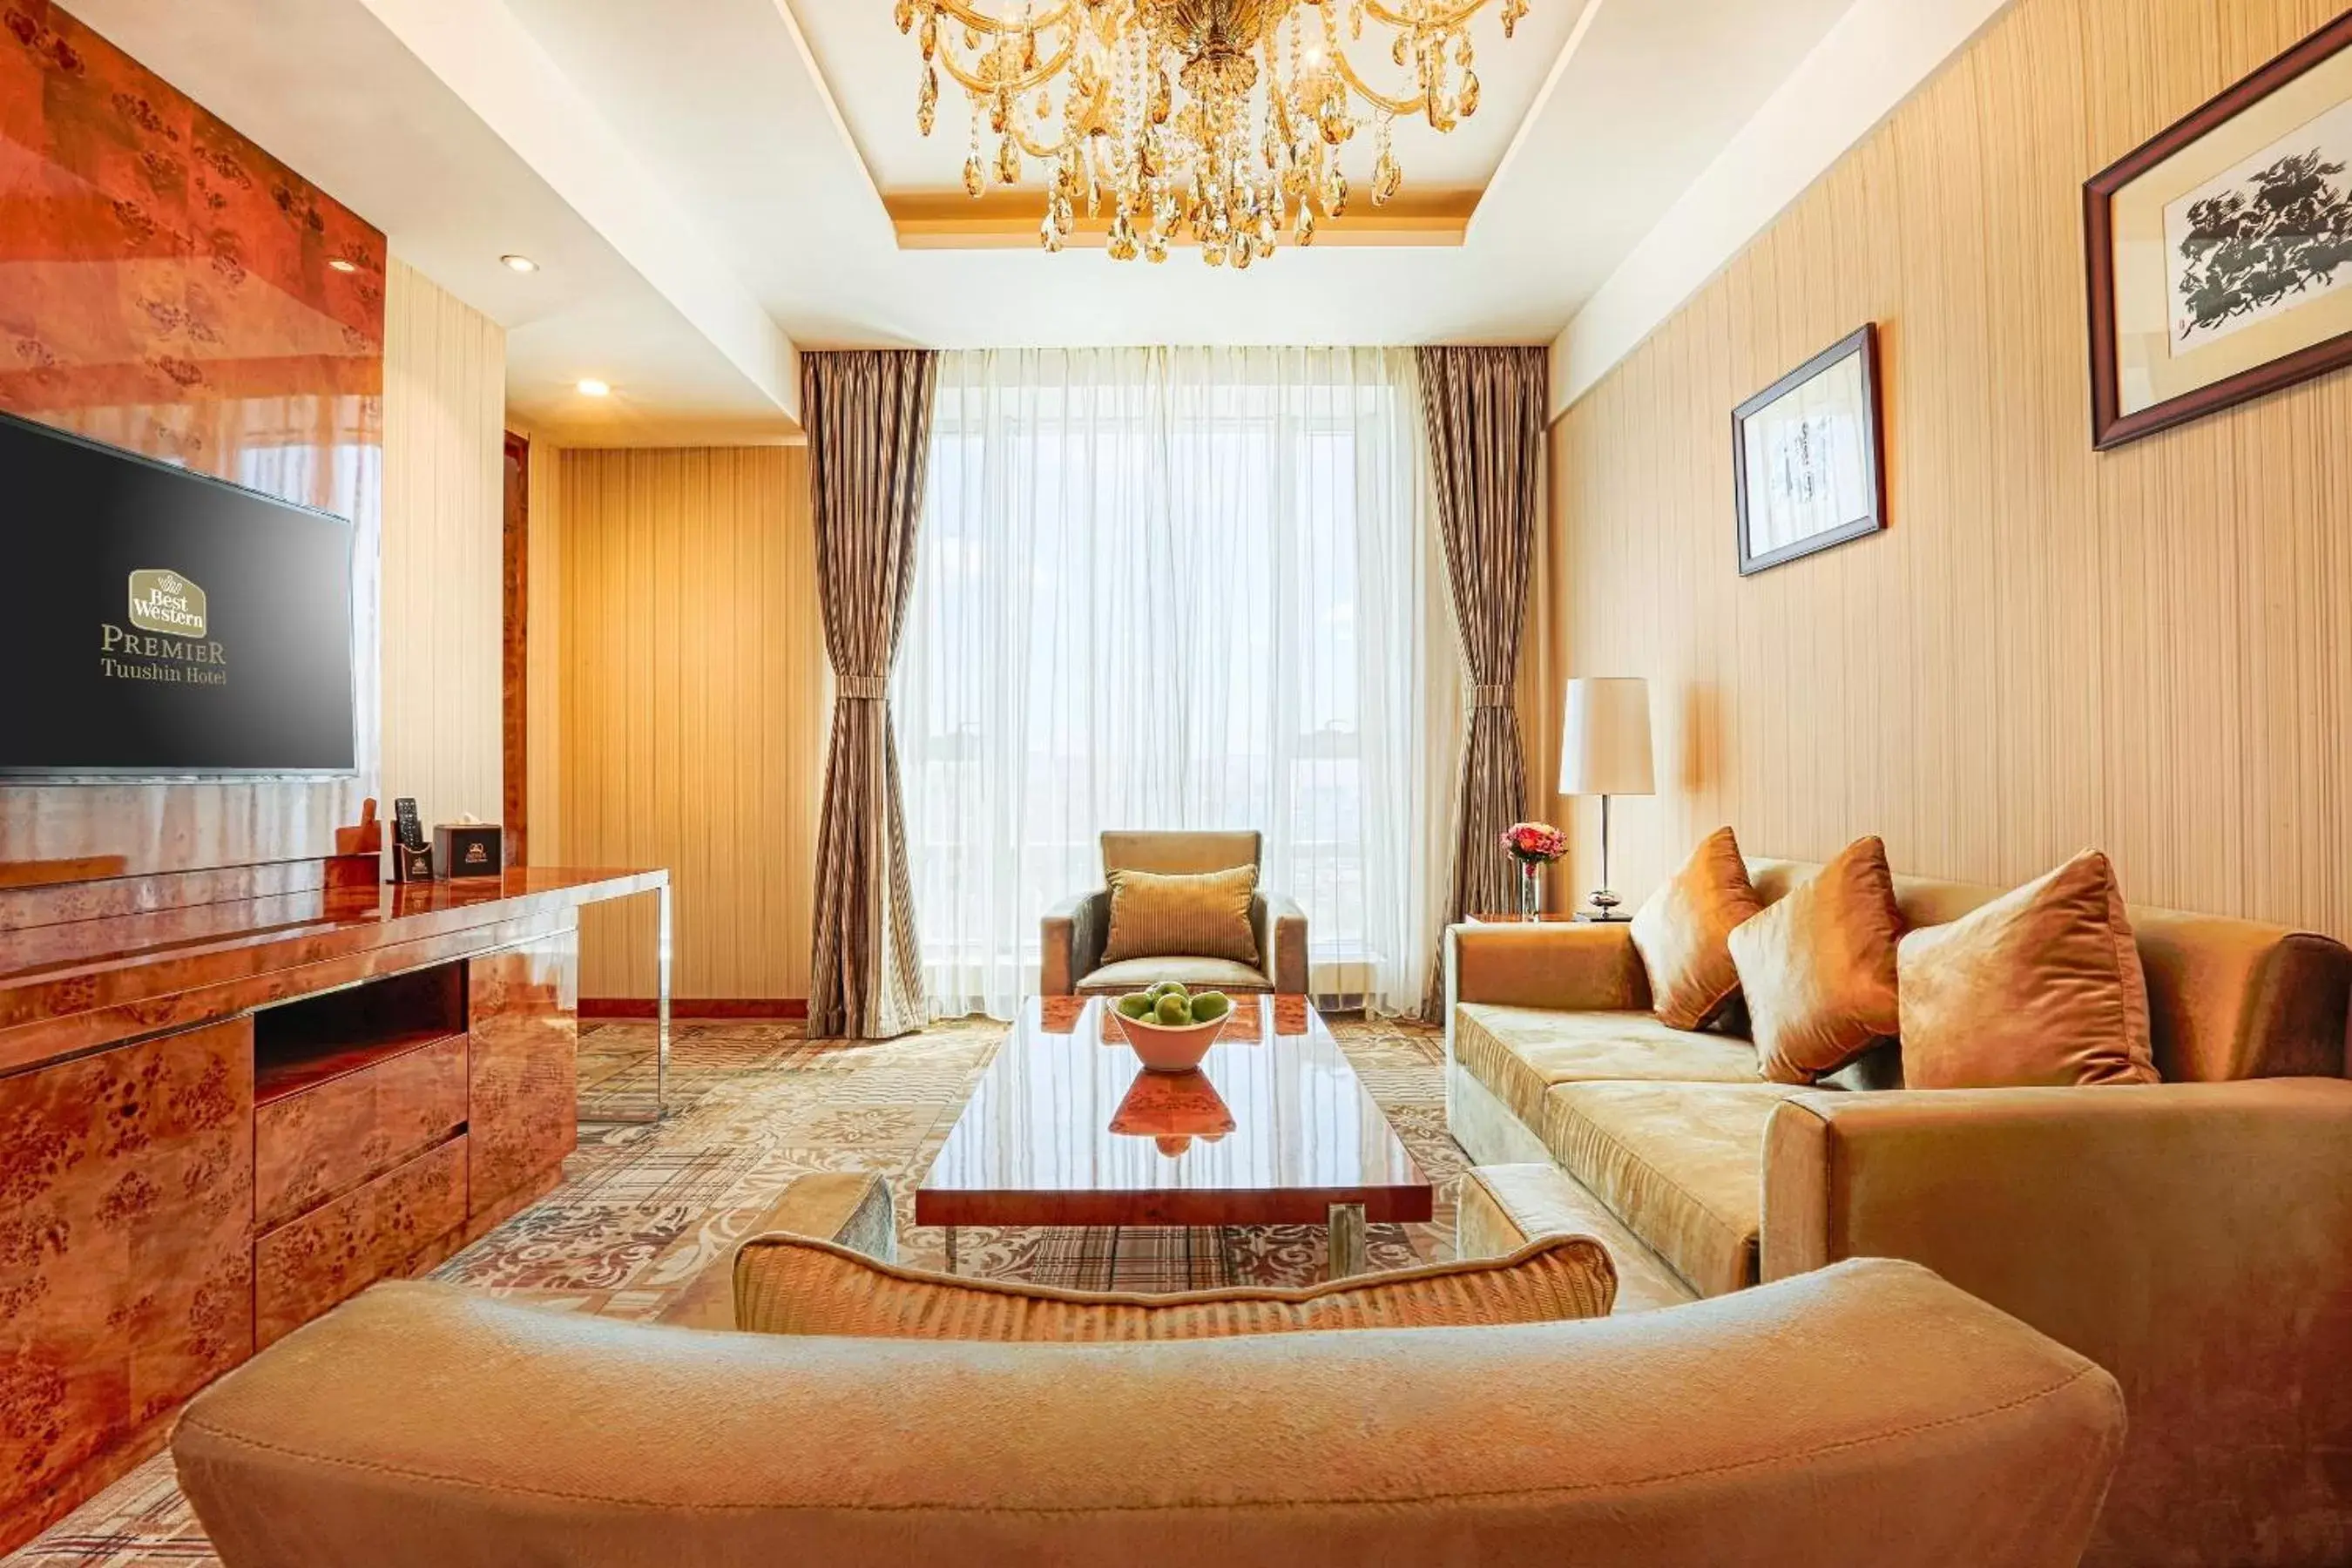 Ambassador Suite in Best Western Premier Tuushin Hotel